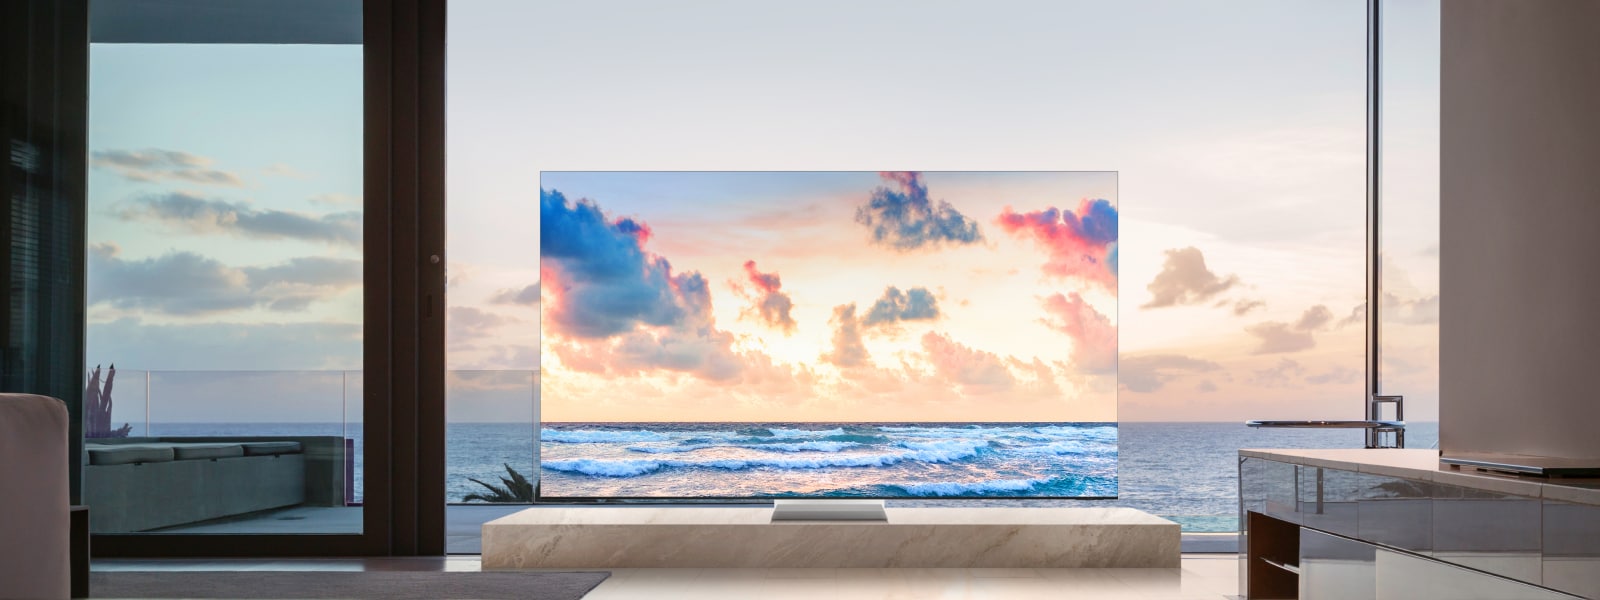 Samsung TV foran et stort vindu med havutsikt